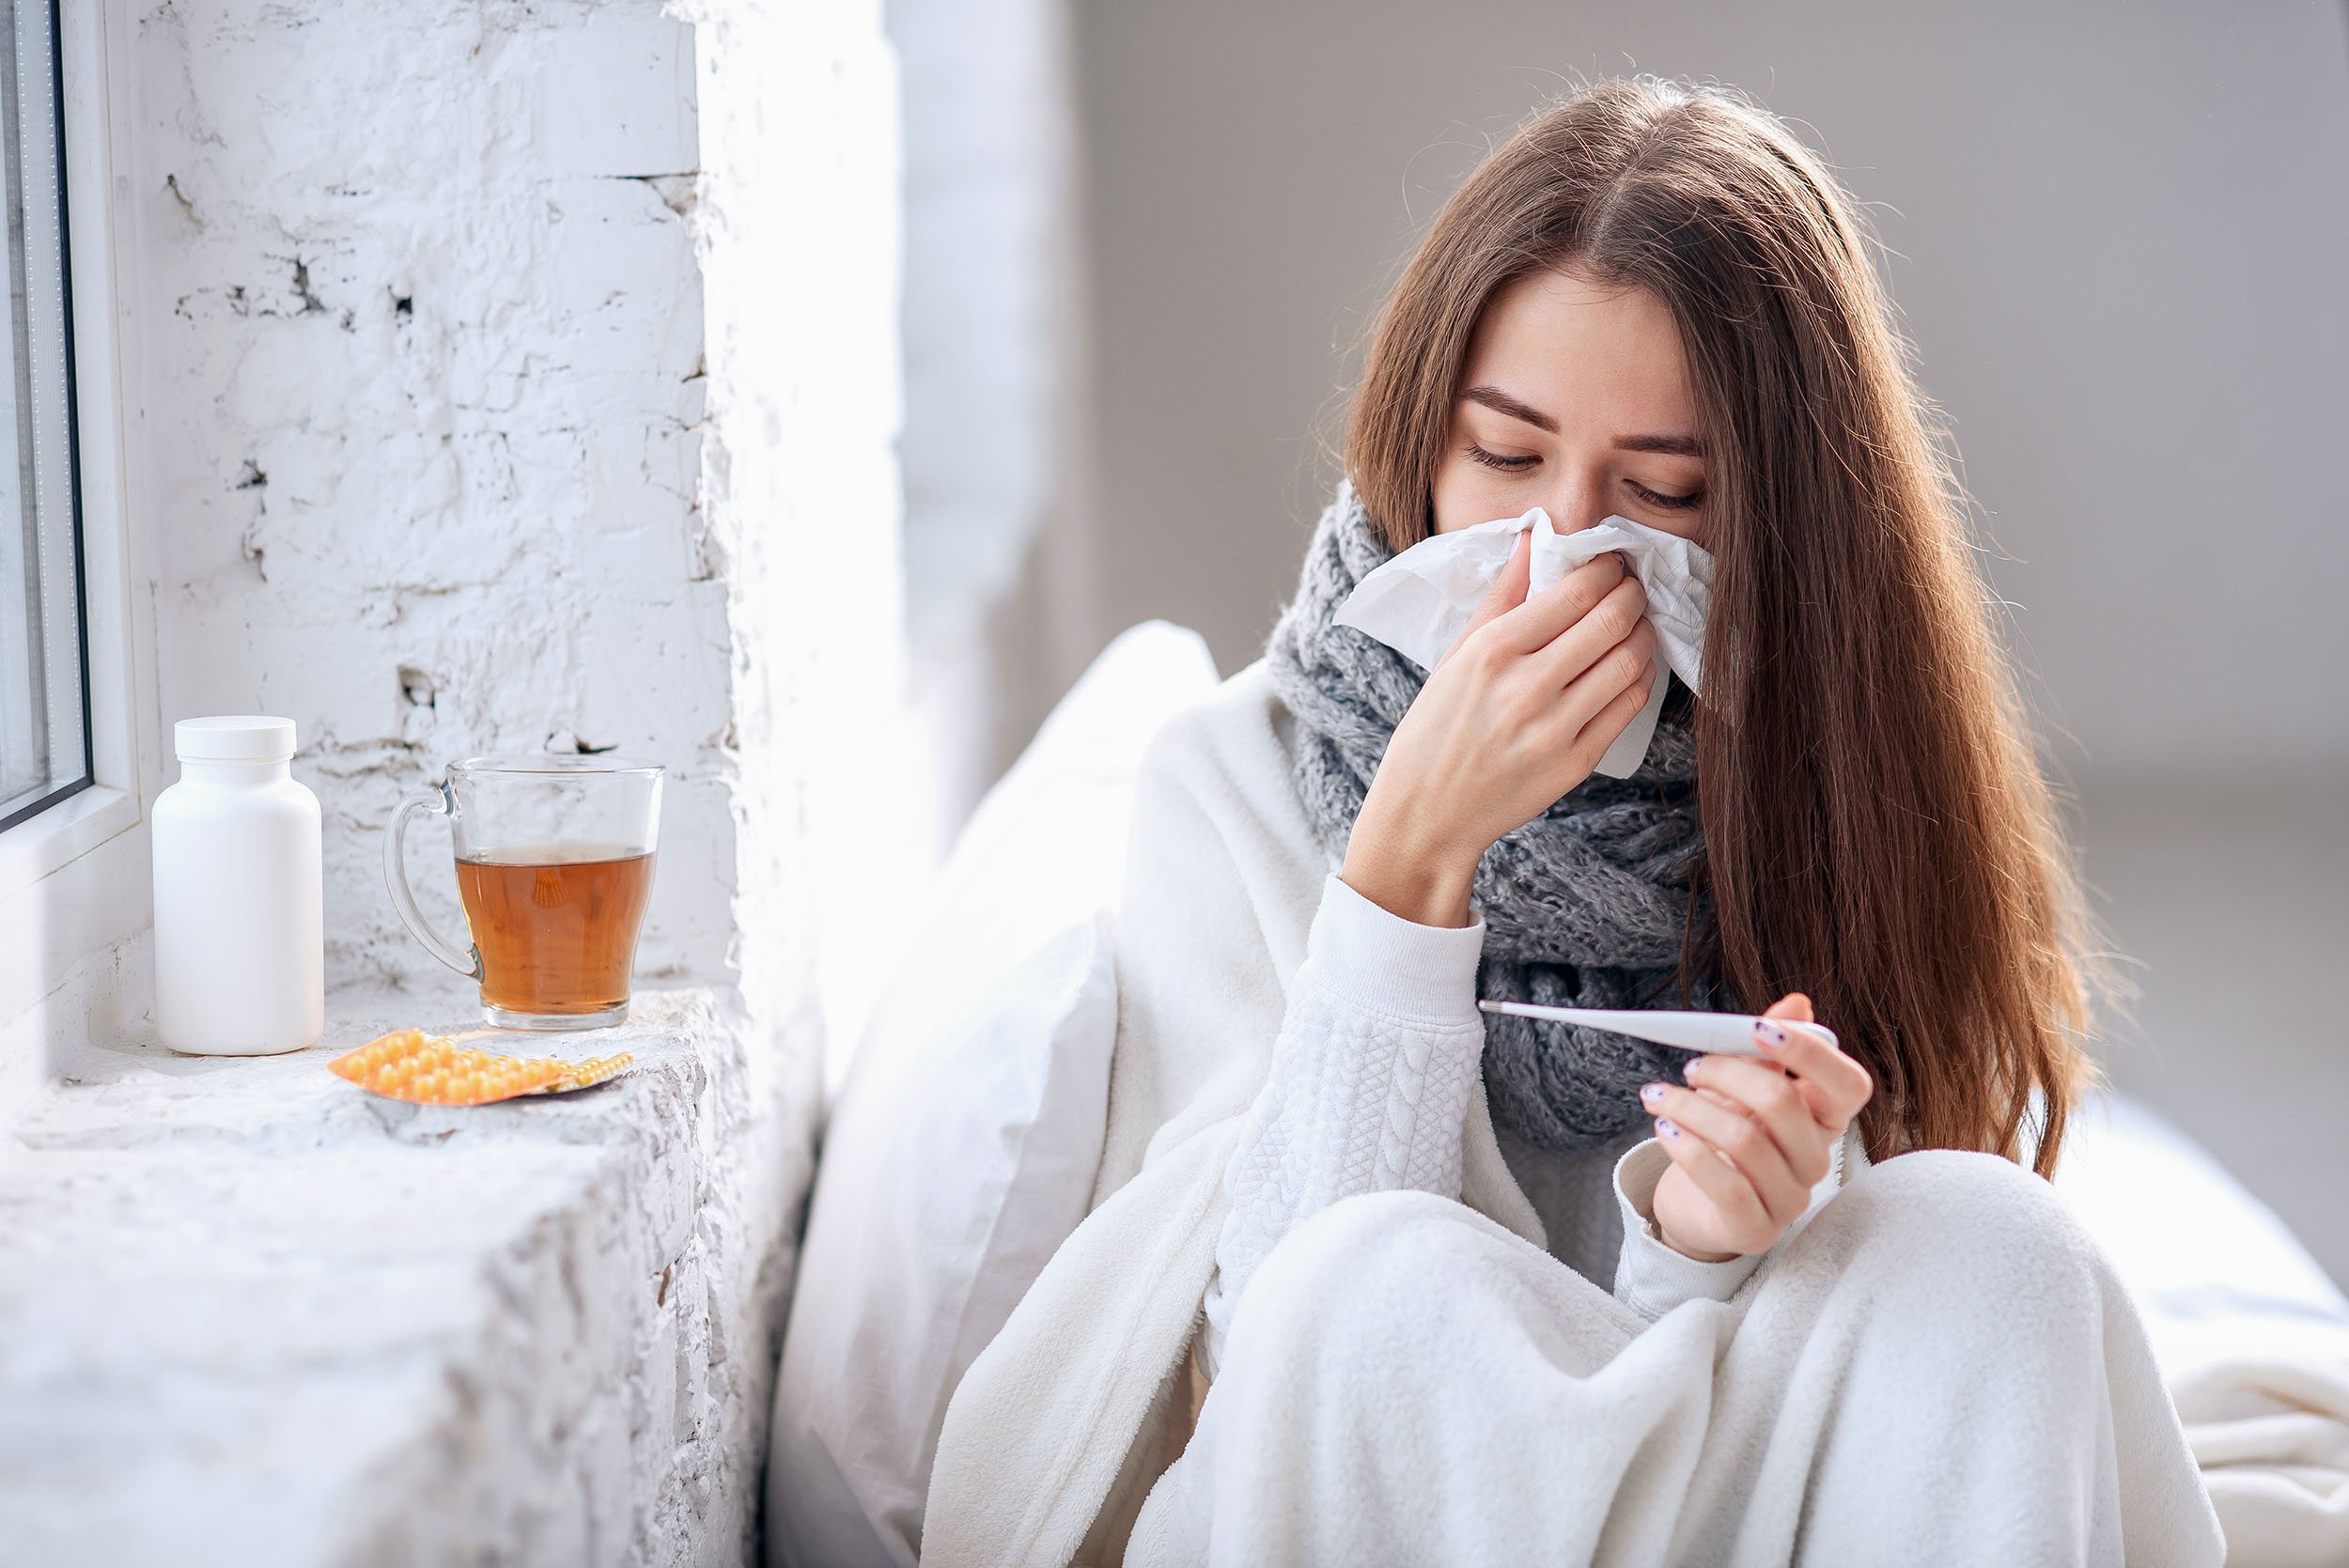  Alexandru Rafila: Vor fi mai multe cazuri de gripă decât anul trecut